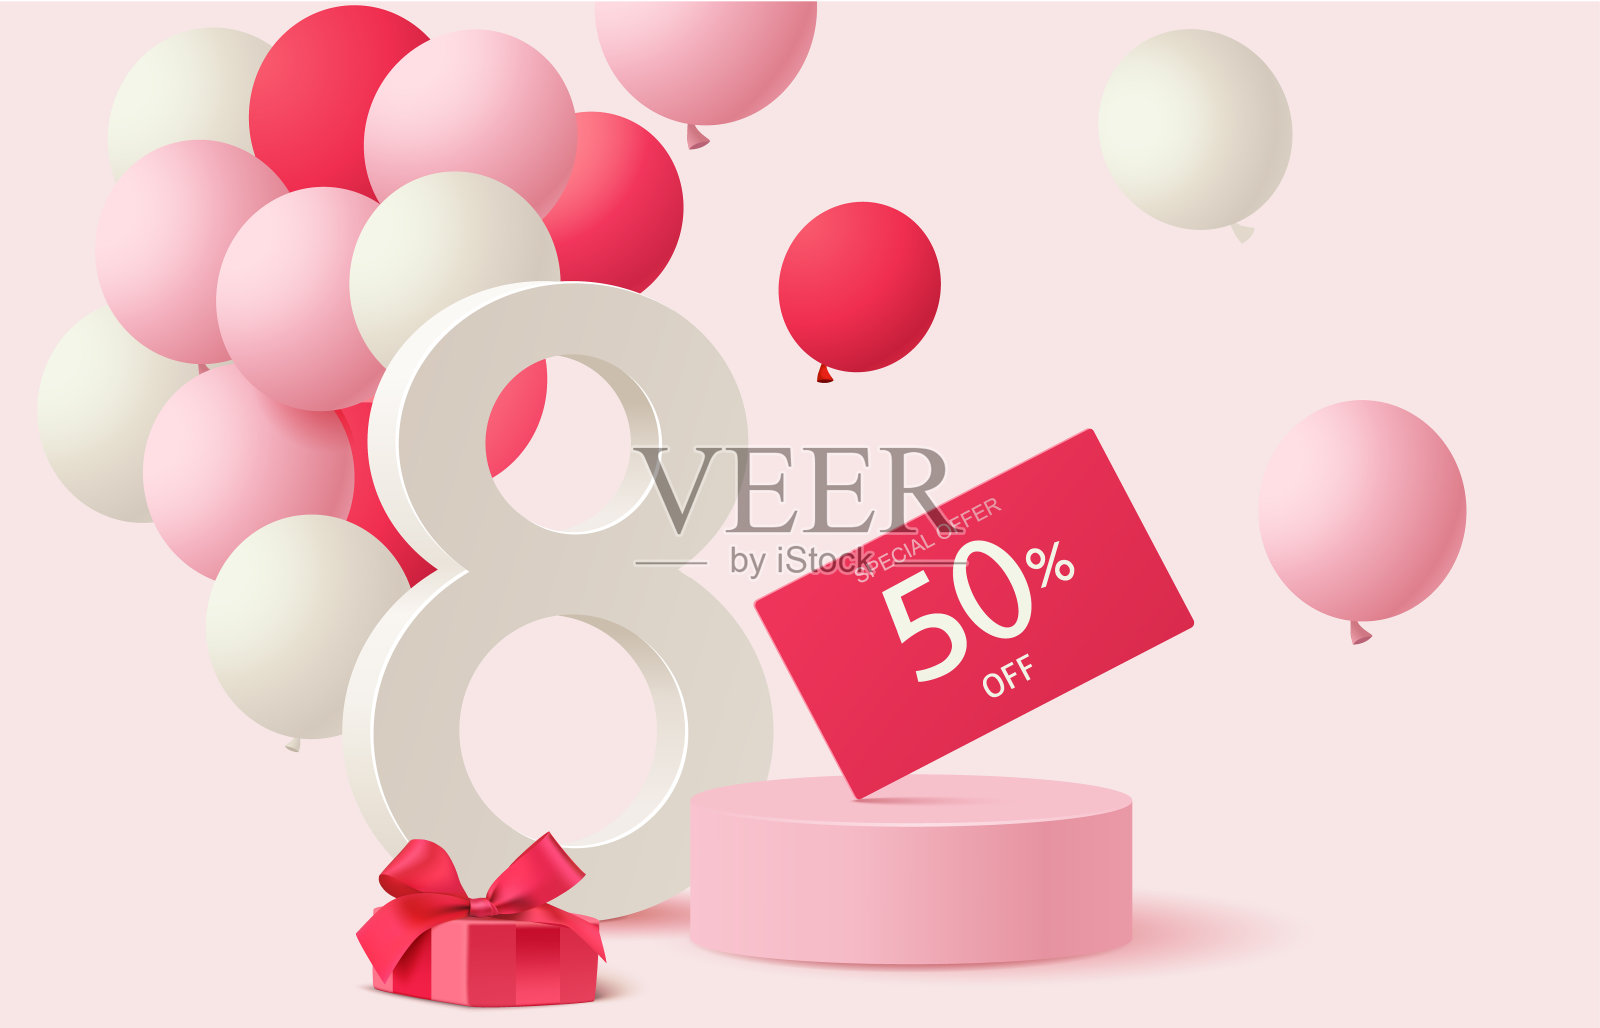 3月8日。国际妇女节销售设计模板。节日背景，红色和白色气球，礼品盒和折扣价格标签在粉红色的圆形讲台。插画图片素材